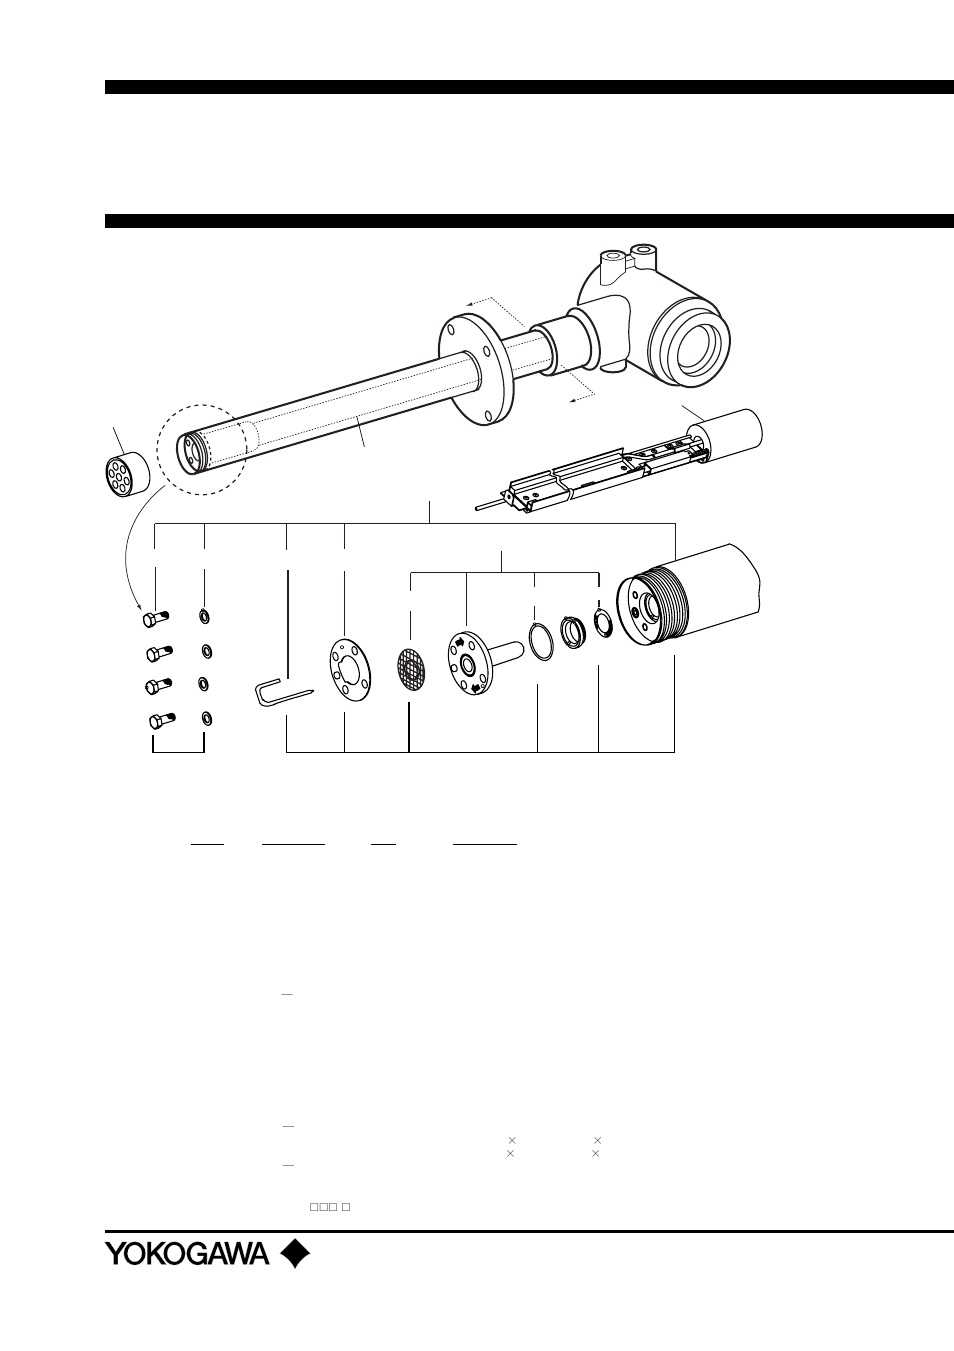 Customer maintenance parts list | Yokogawa Integral Oxygen Analyzer ZR202 User Manual | Page 166 / 169